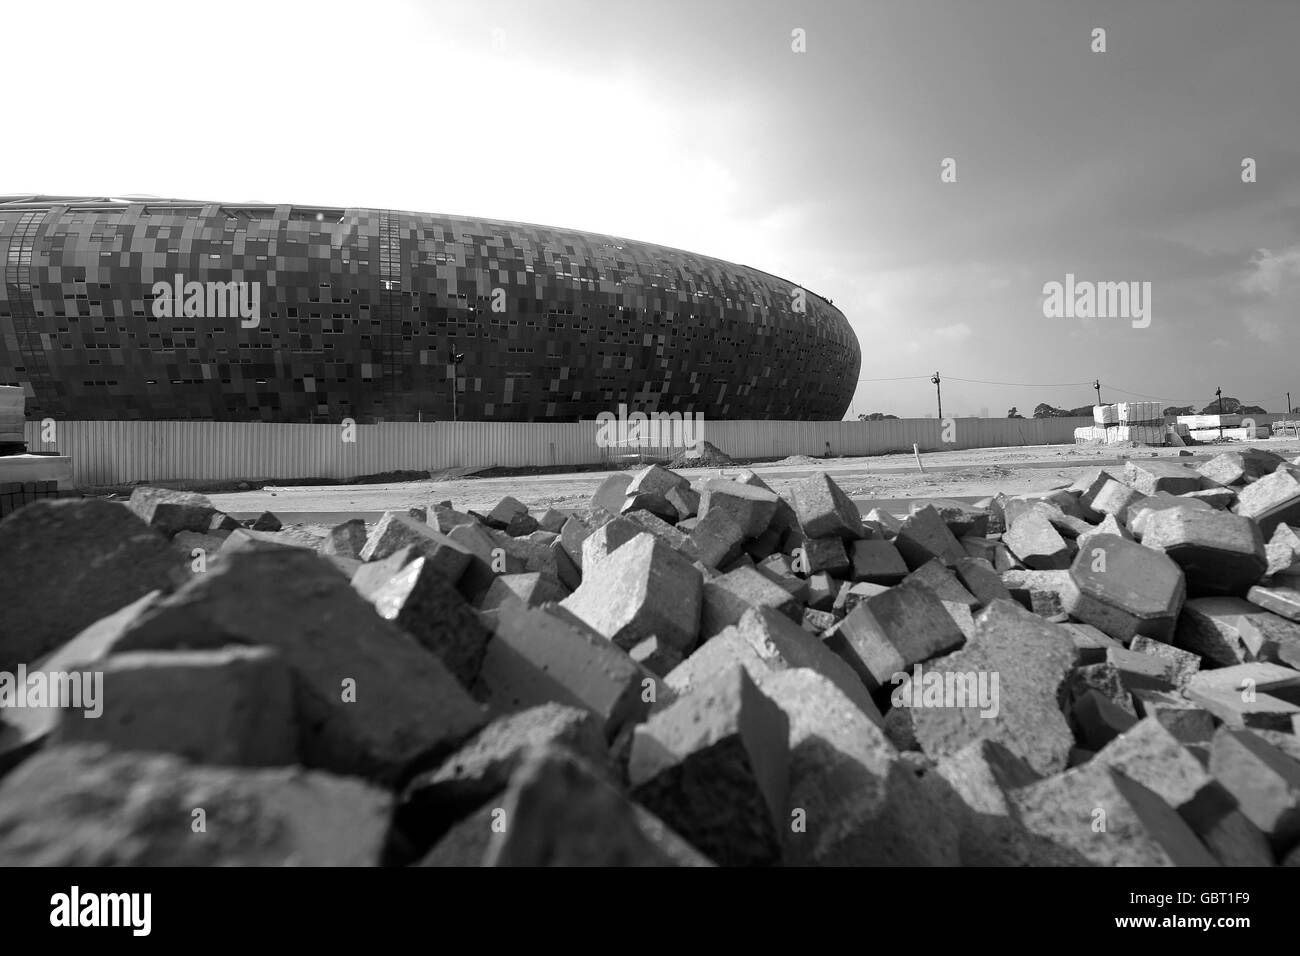 Calcio - Coppa del Mondo FIFA 2010 - Soccer City Stadium costruzione - Johannesburg Foto Stock